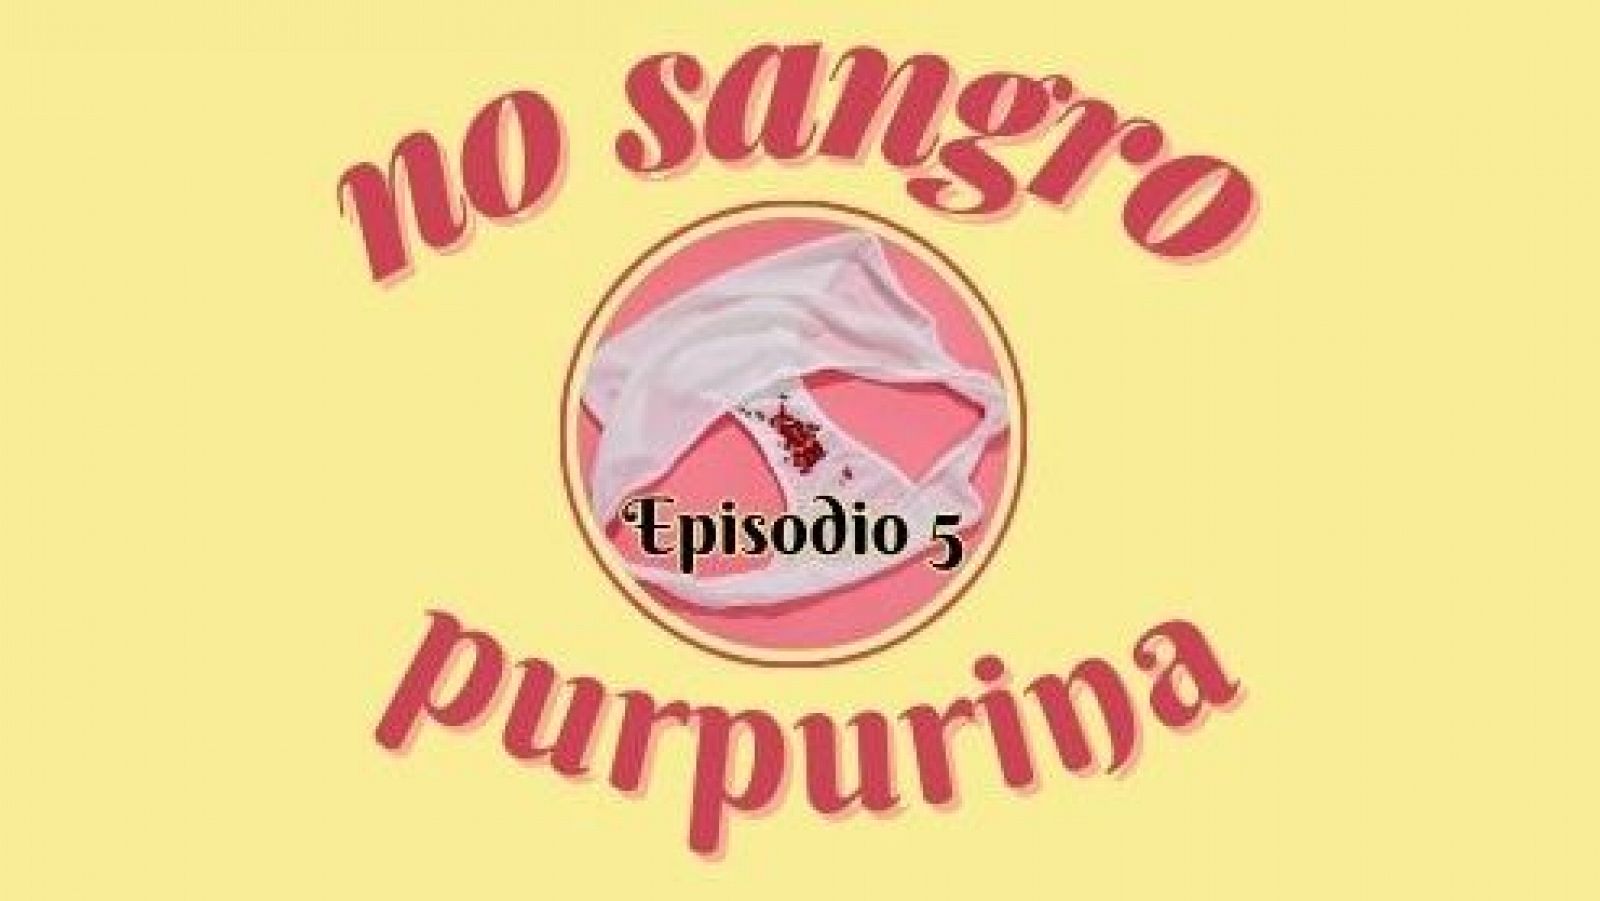 No sangro purpurina - Episodio 5: La regla antes, durante y despu�s del embarazo - Escuchar ahora